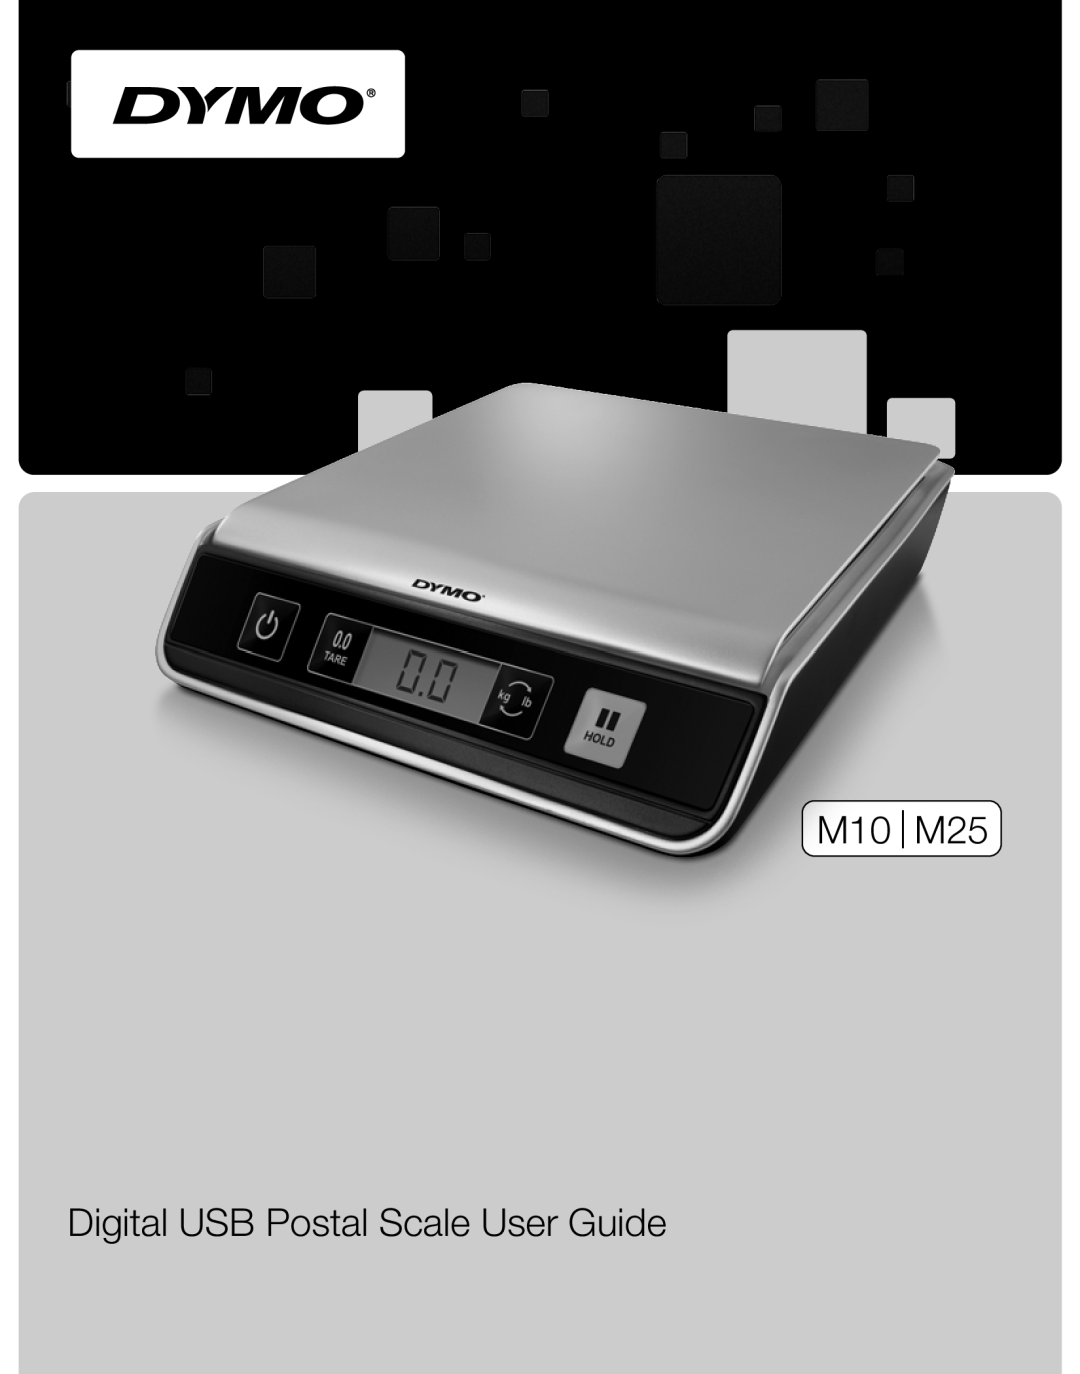 Dymo manual M10 M25, Digital USB Postal Scale User Guide, Guide dutilisation de la Balance postale USB numérique 